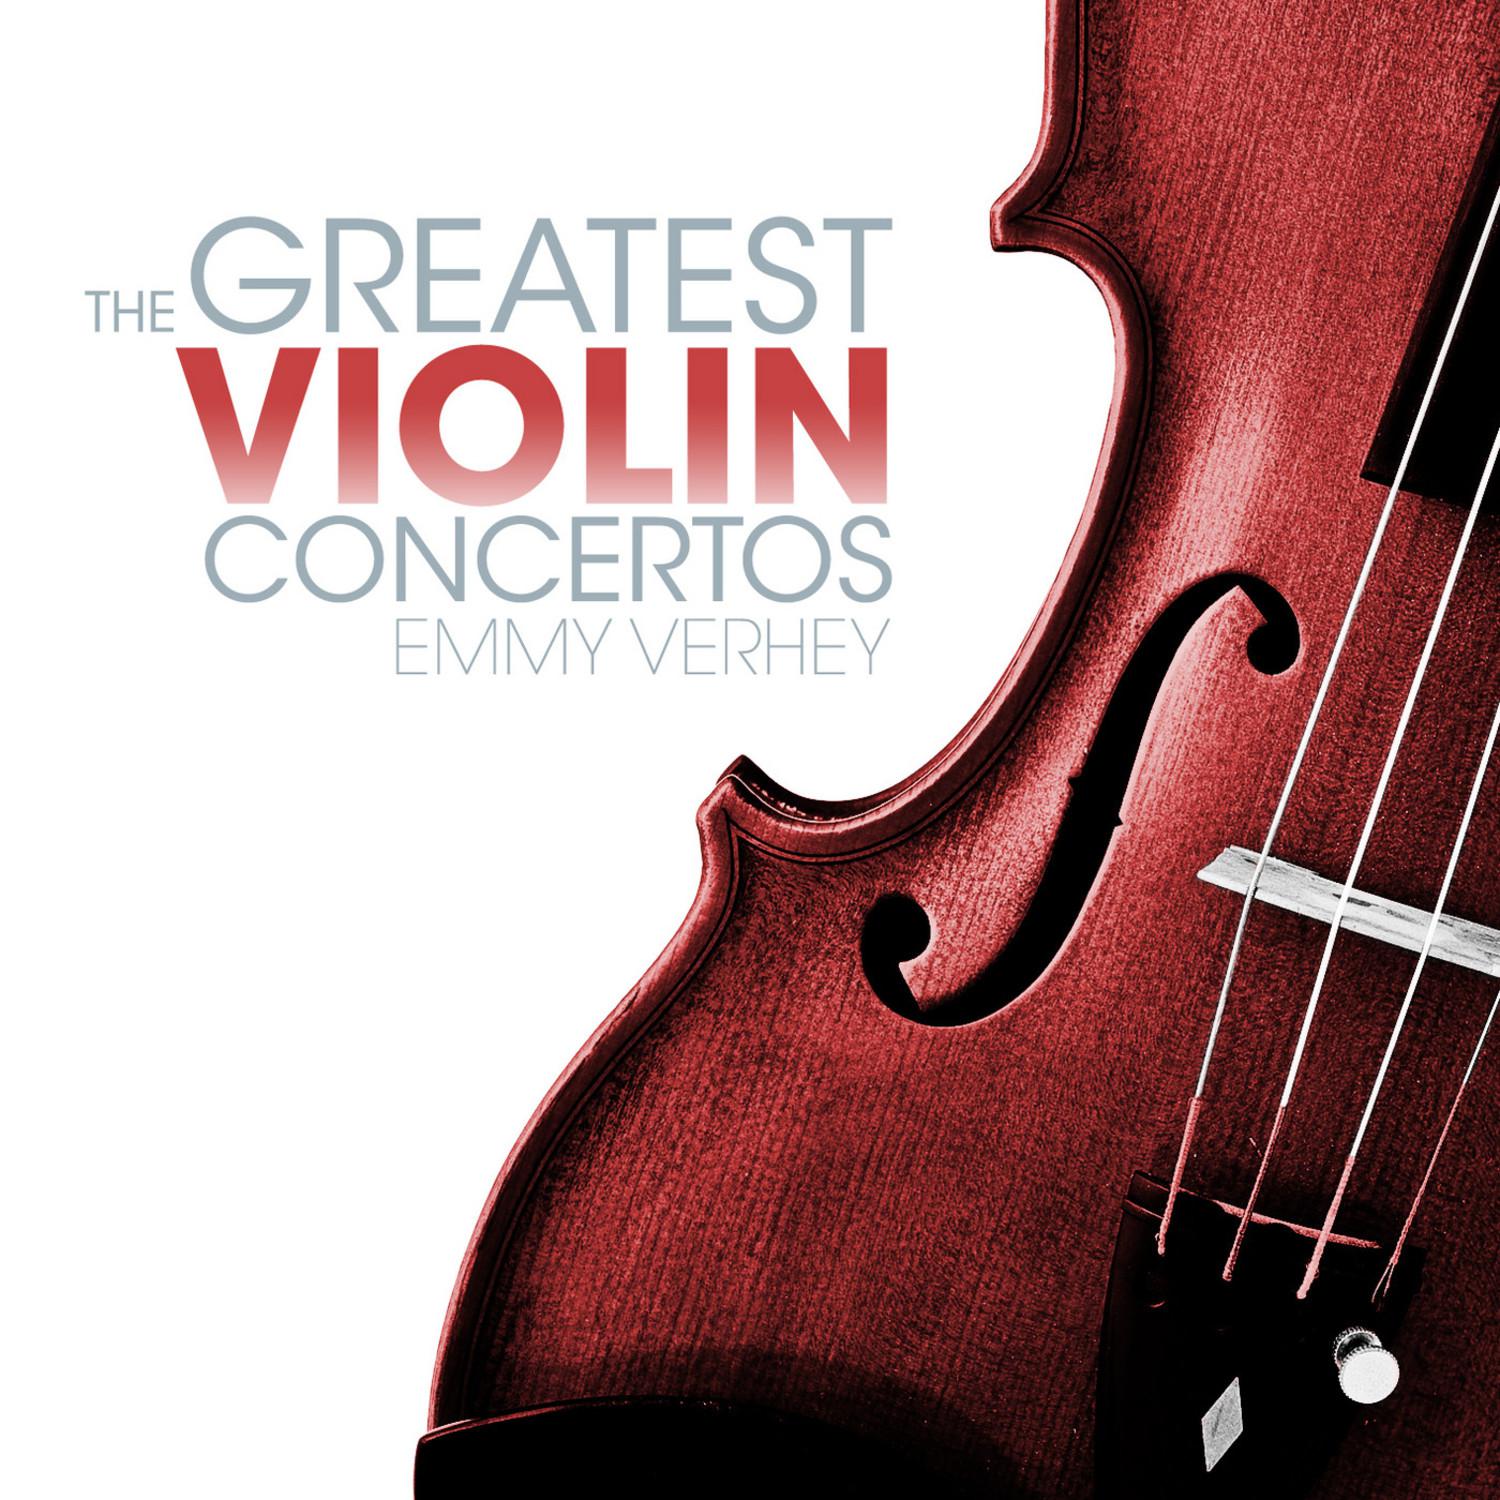 Concerto in E Minor for Violin and Orchestra, Op. 64: III. Finale: Allegretto non troppo - Allegro molto vivace